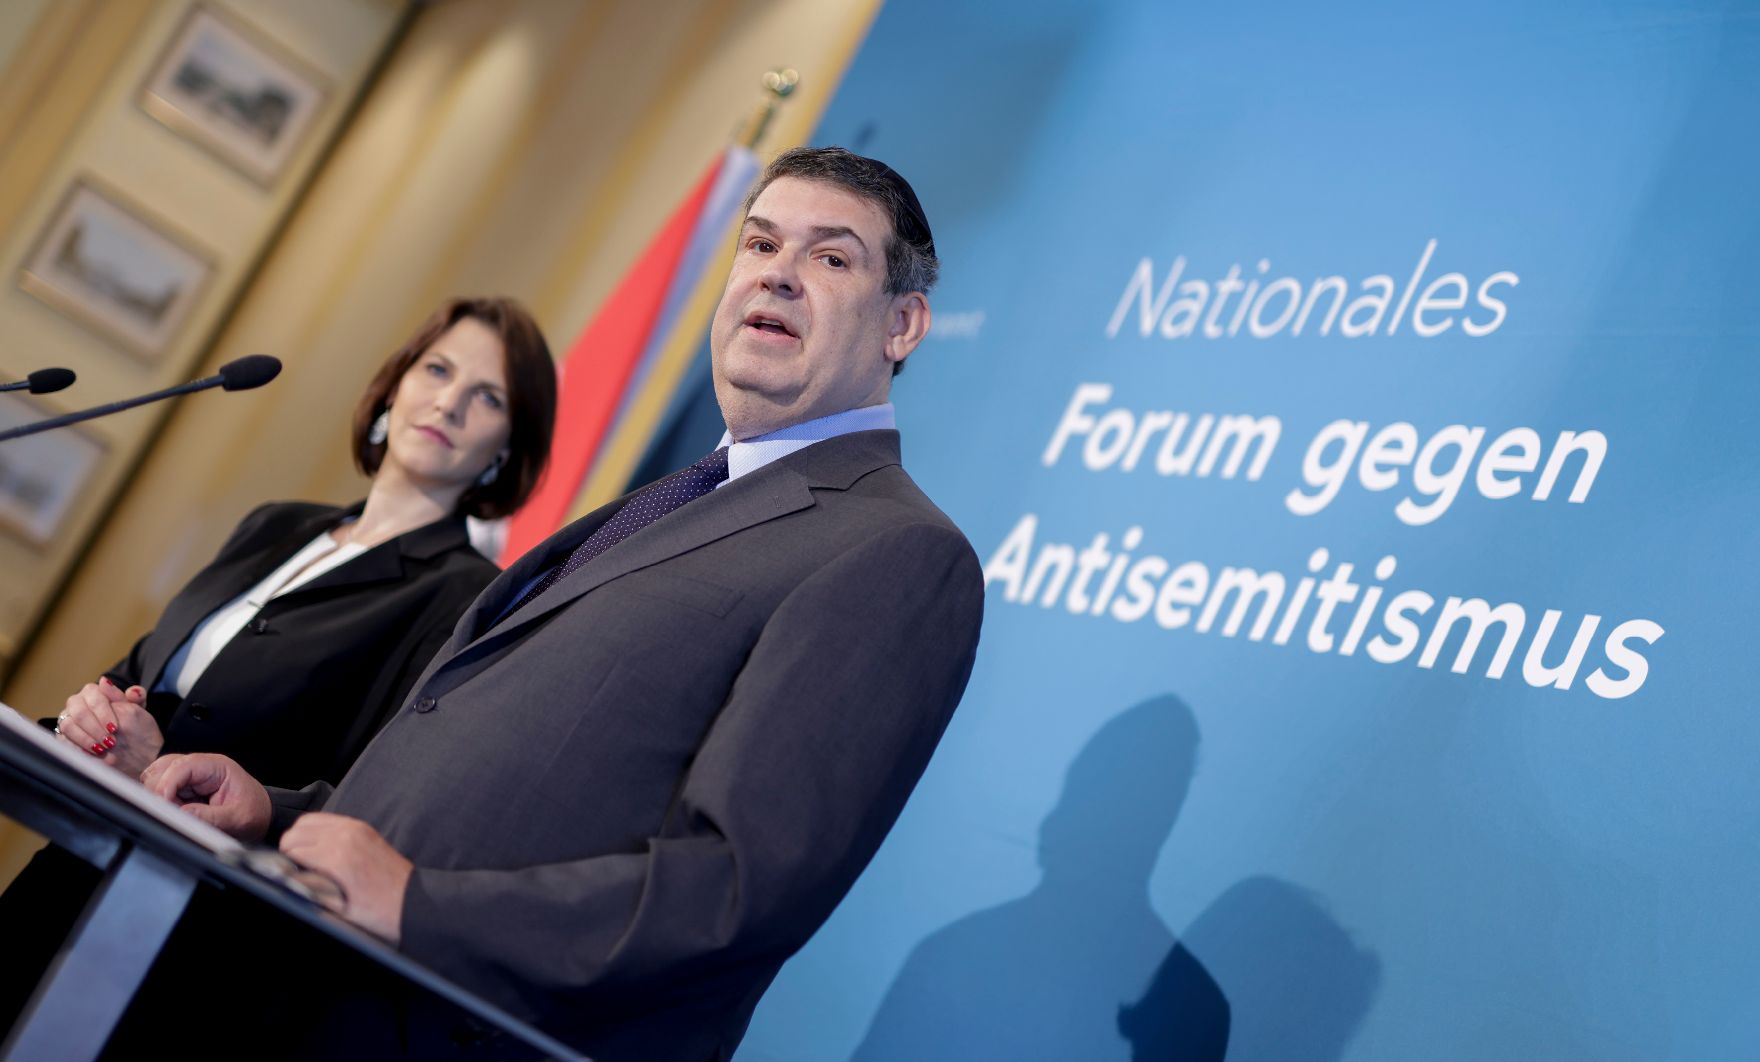 Am 13. Juni 2022 lud Bundesministerin Karoline Edtstadler (l.) gemeinsam mit dem Präsident der IKG Oskar Deutsch (r.) zu einem Forum gegen Antisemitismus ein. Im Bild bei der Pressekonferenz.